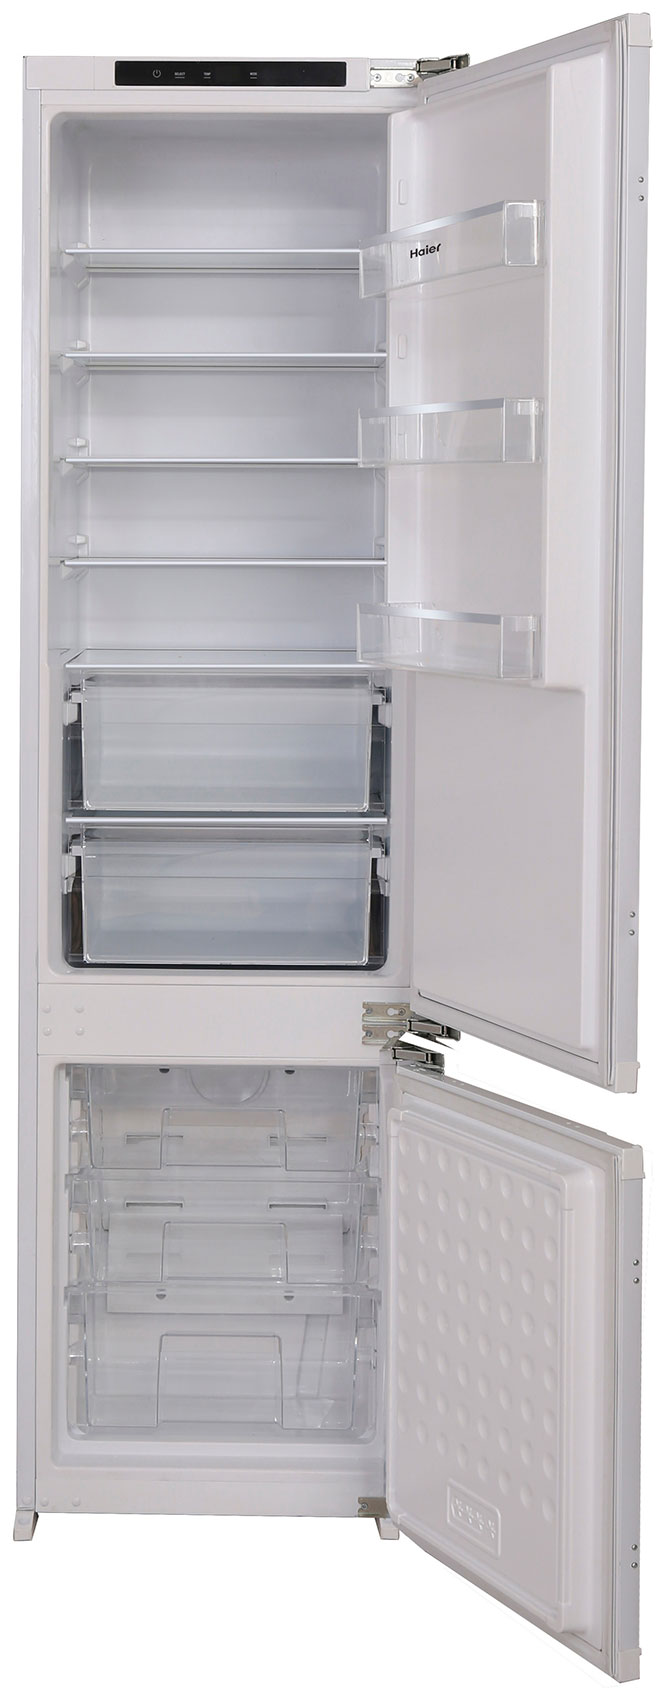 Встраиваемый двухкамерный холодильник Ascoli ADRF305WEBI встраиваемый двухкамерный холодильник ascoli adrf310webi